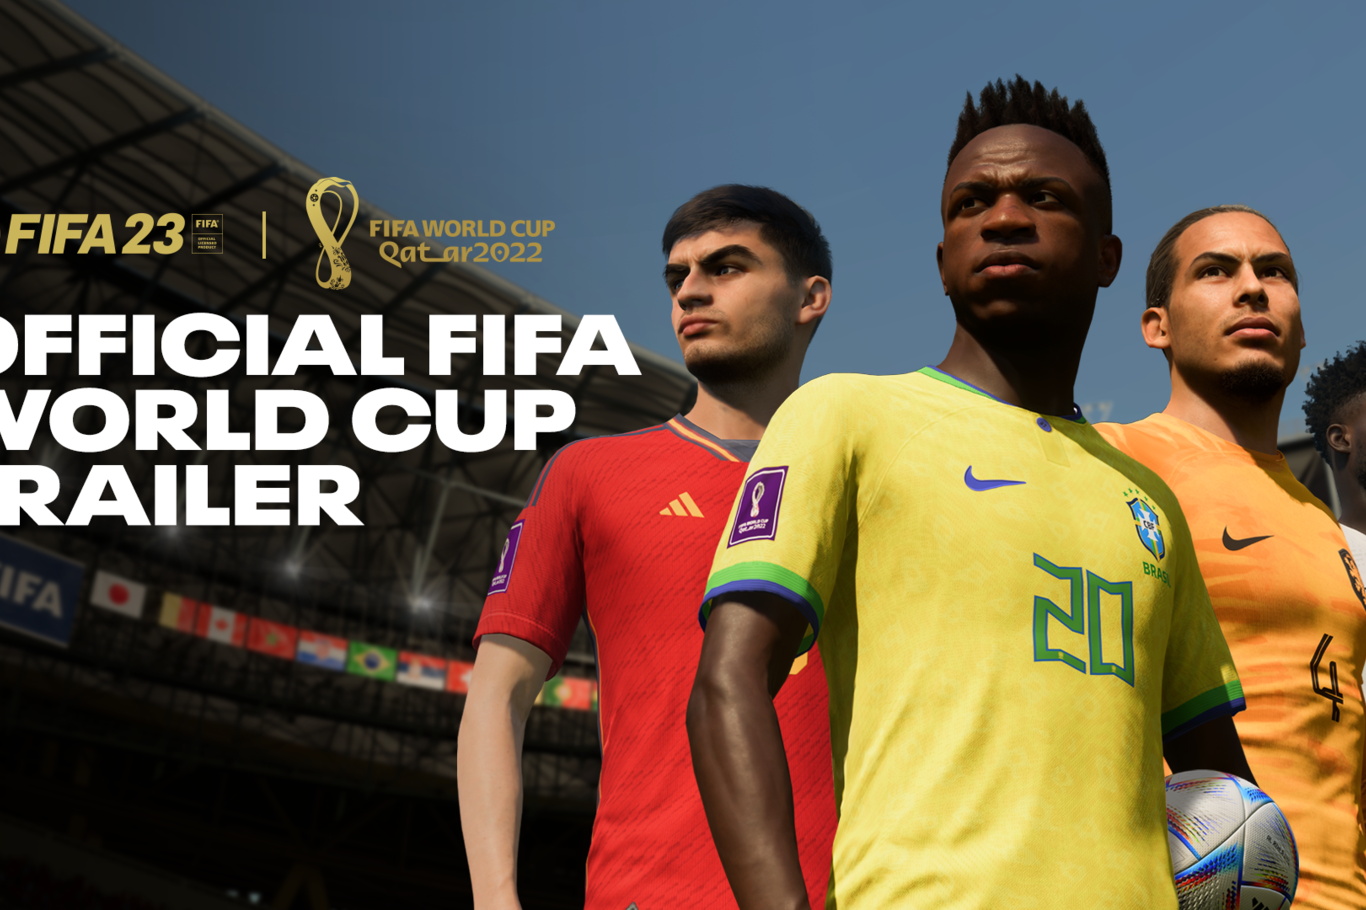 FIFA 23 recibirá contenido exclusivo del Mundial Catar 2022